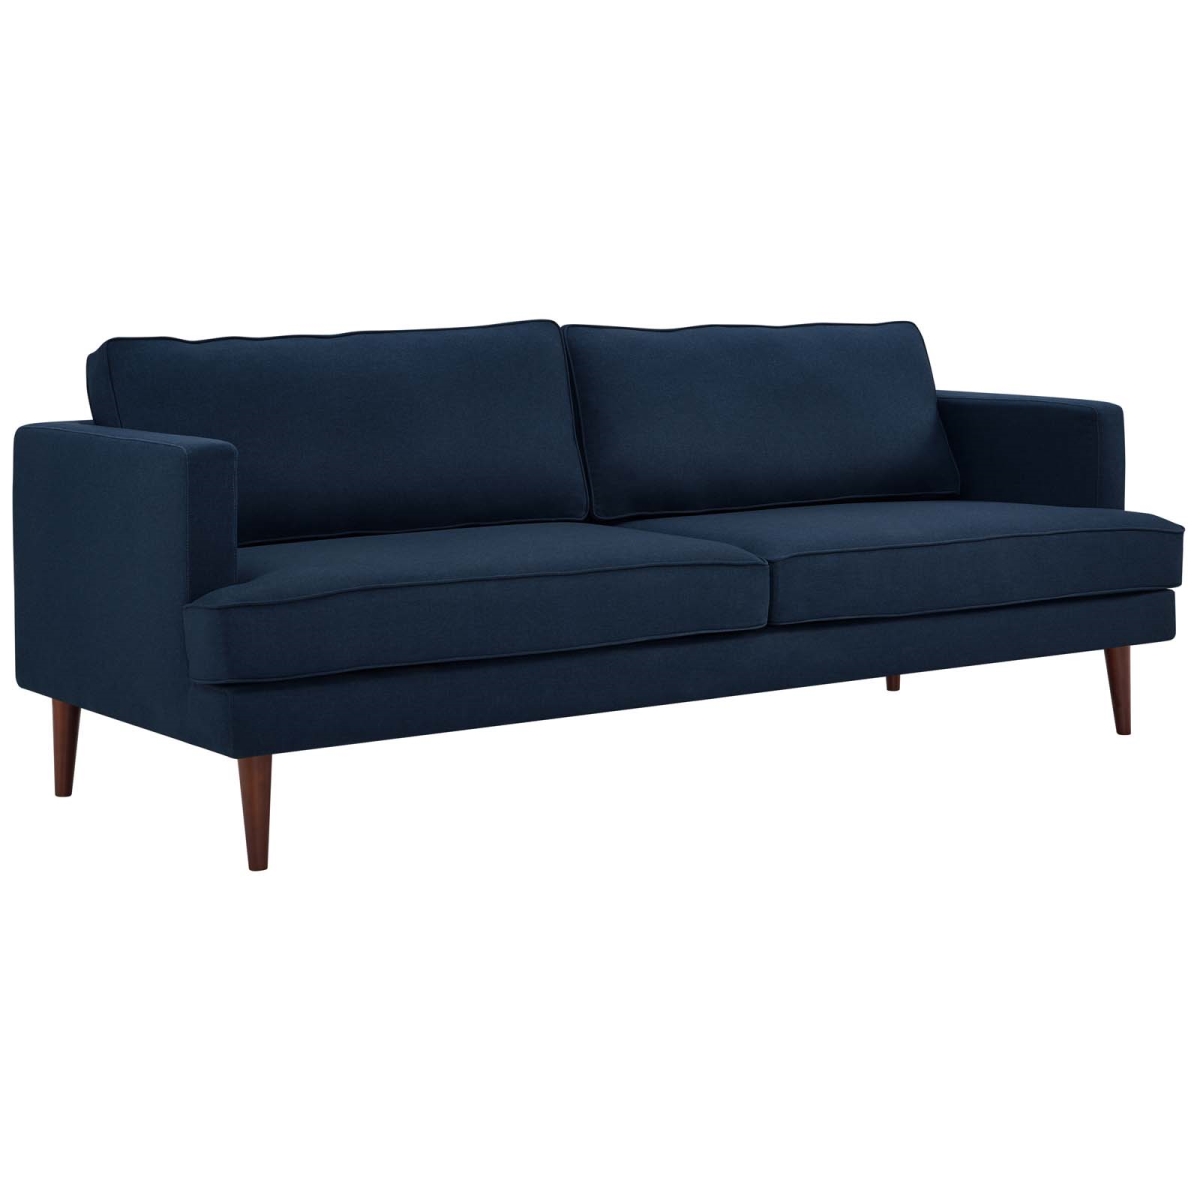 Eei-3057-blu Agile Upholstered Fabric Sofa - Blue, 34.5 X 35 X 86.5 In.